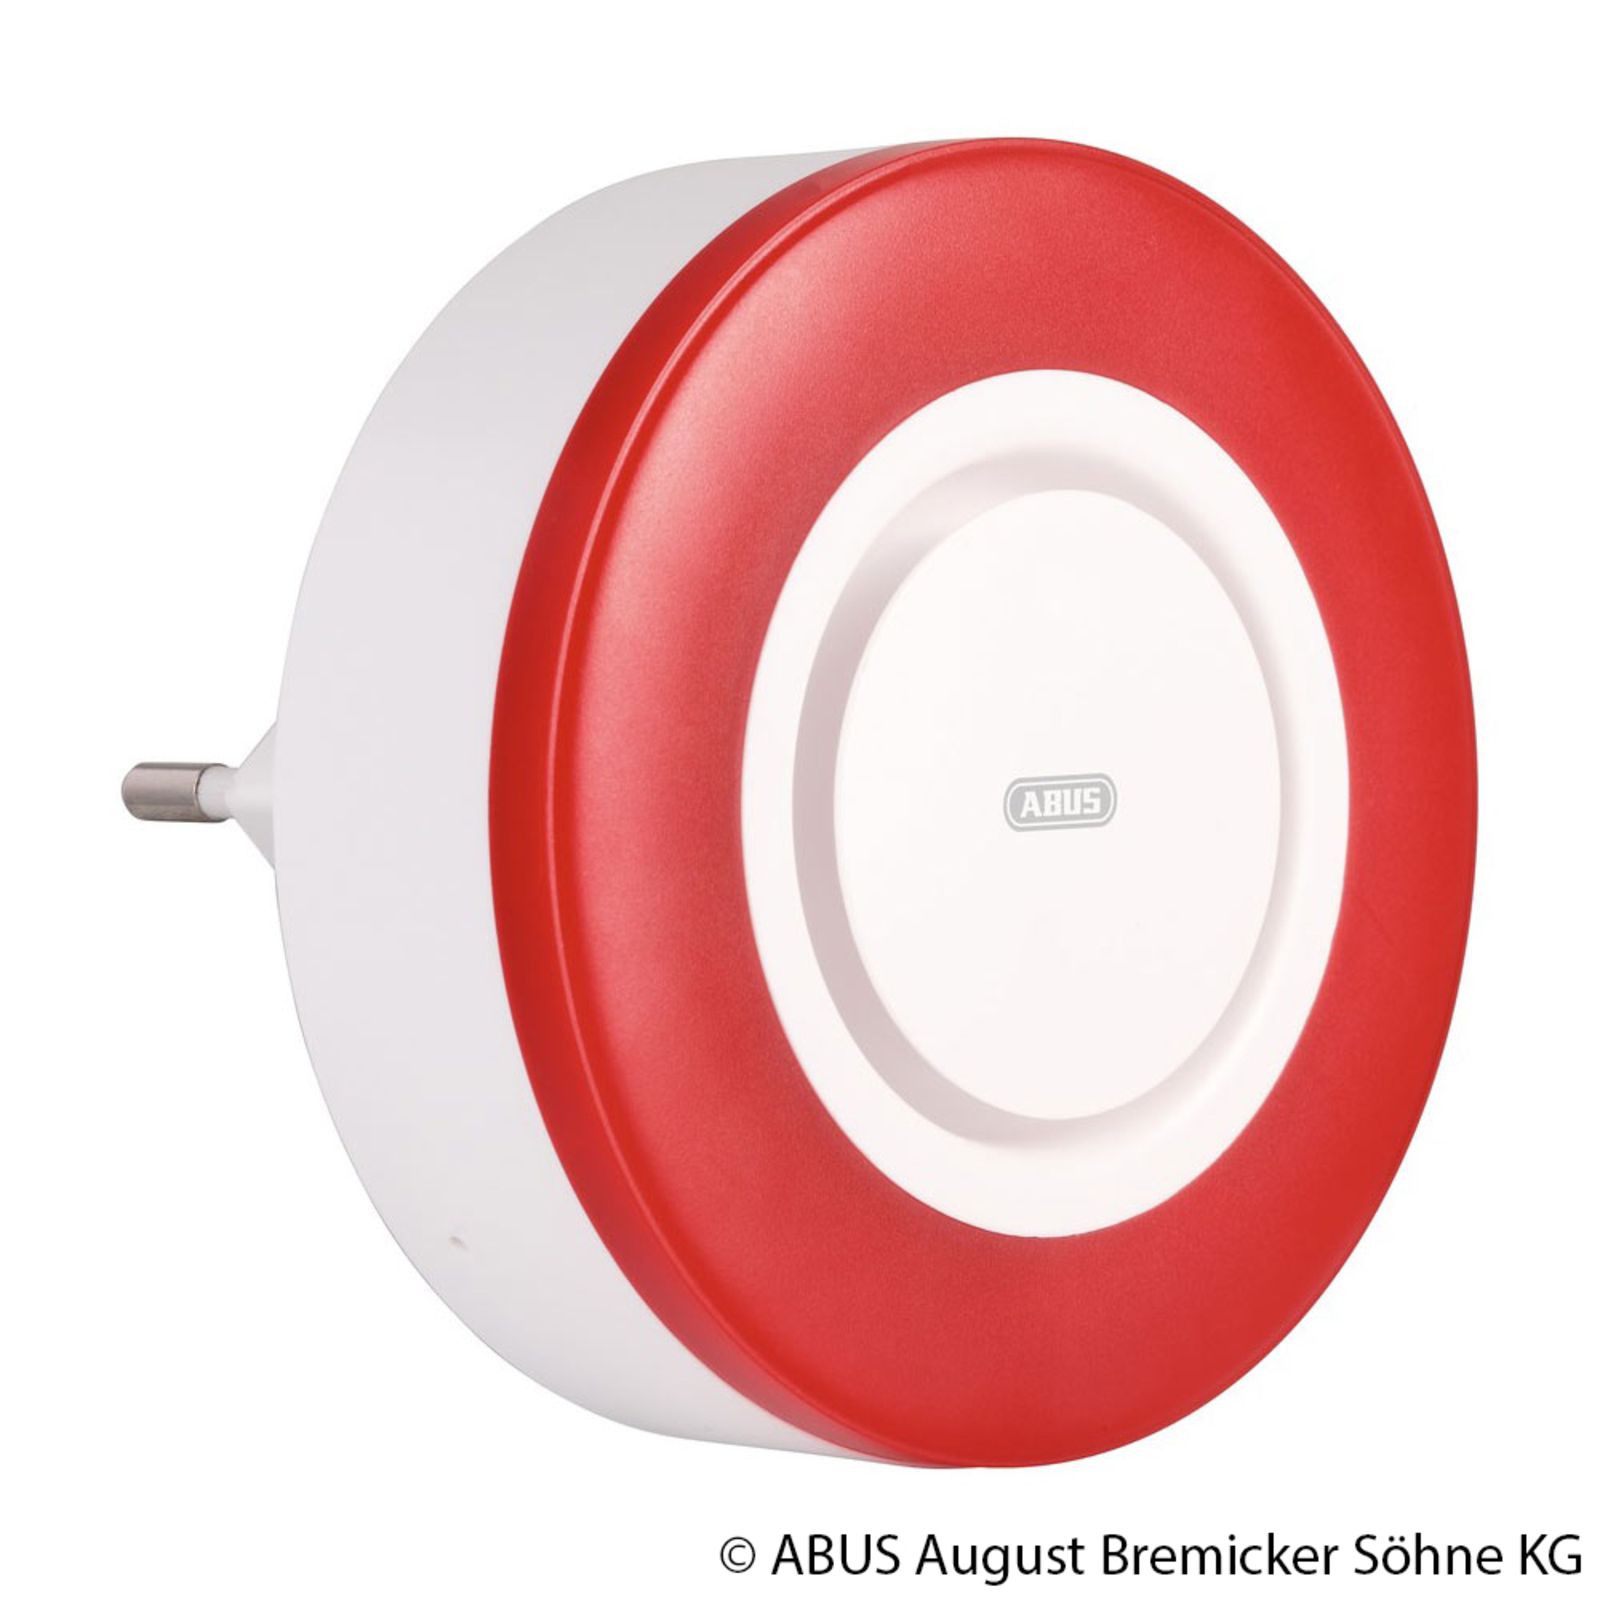 ABUS Z-Wave wireless indoor siren